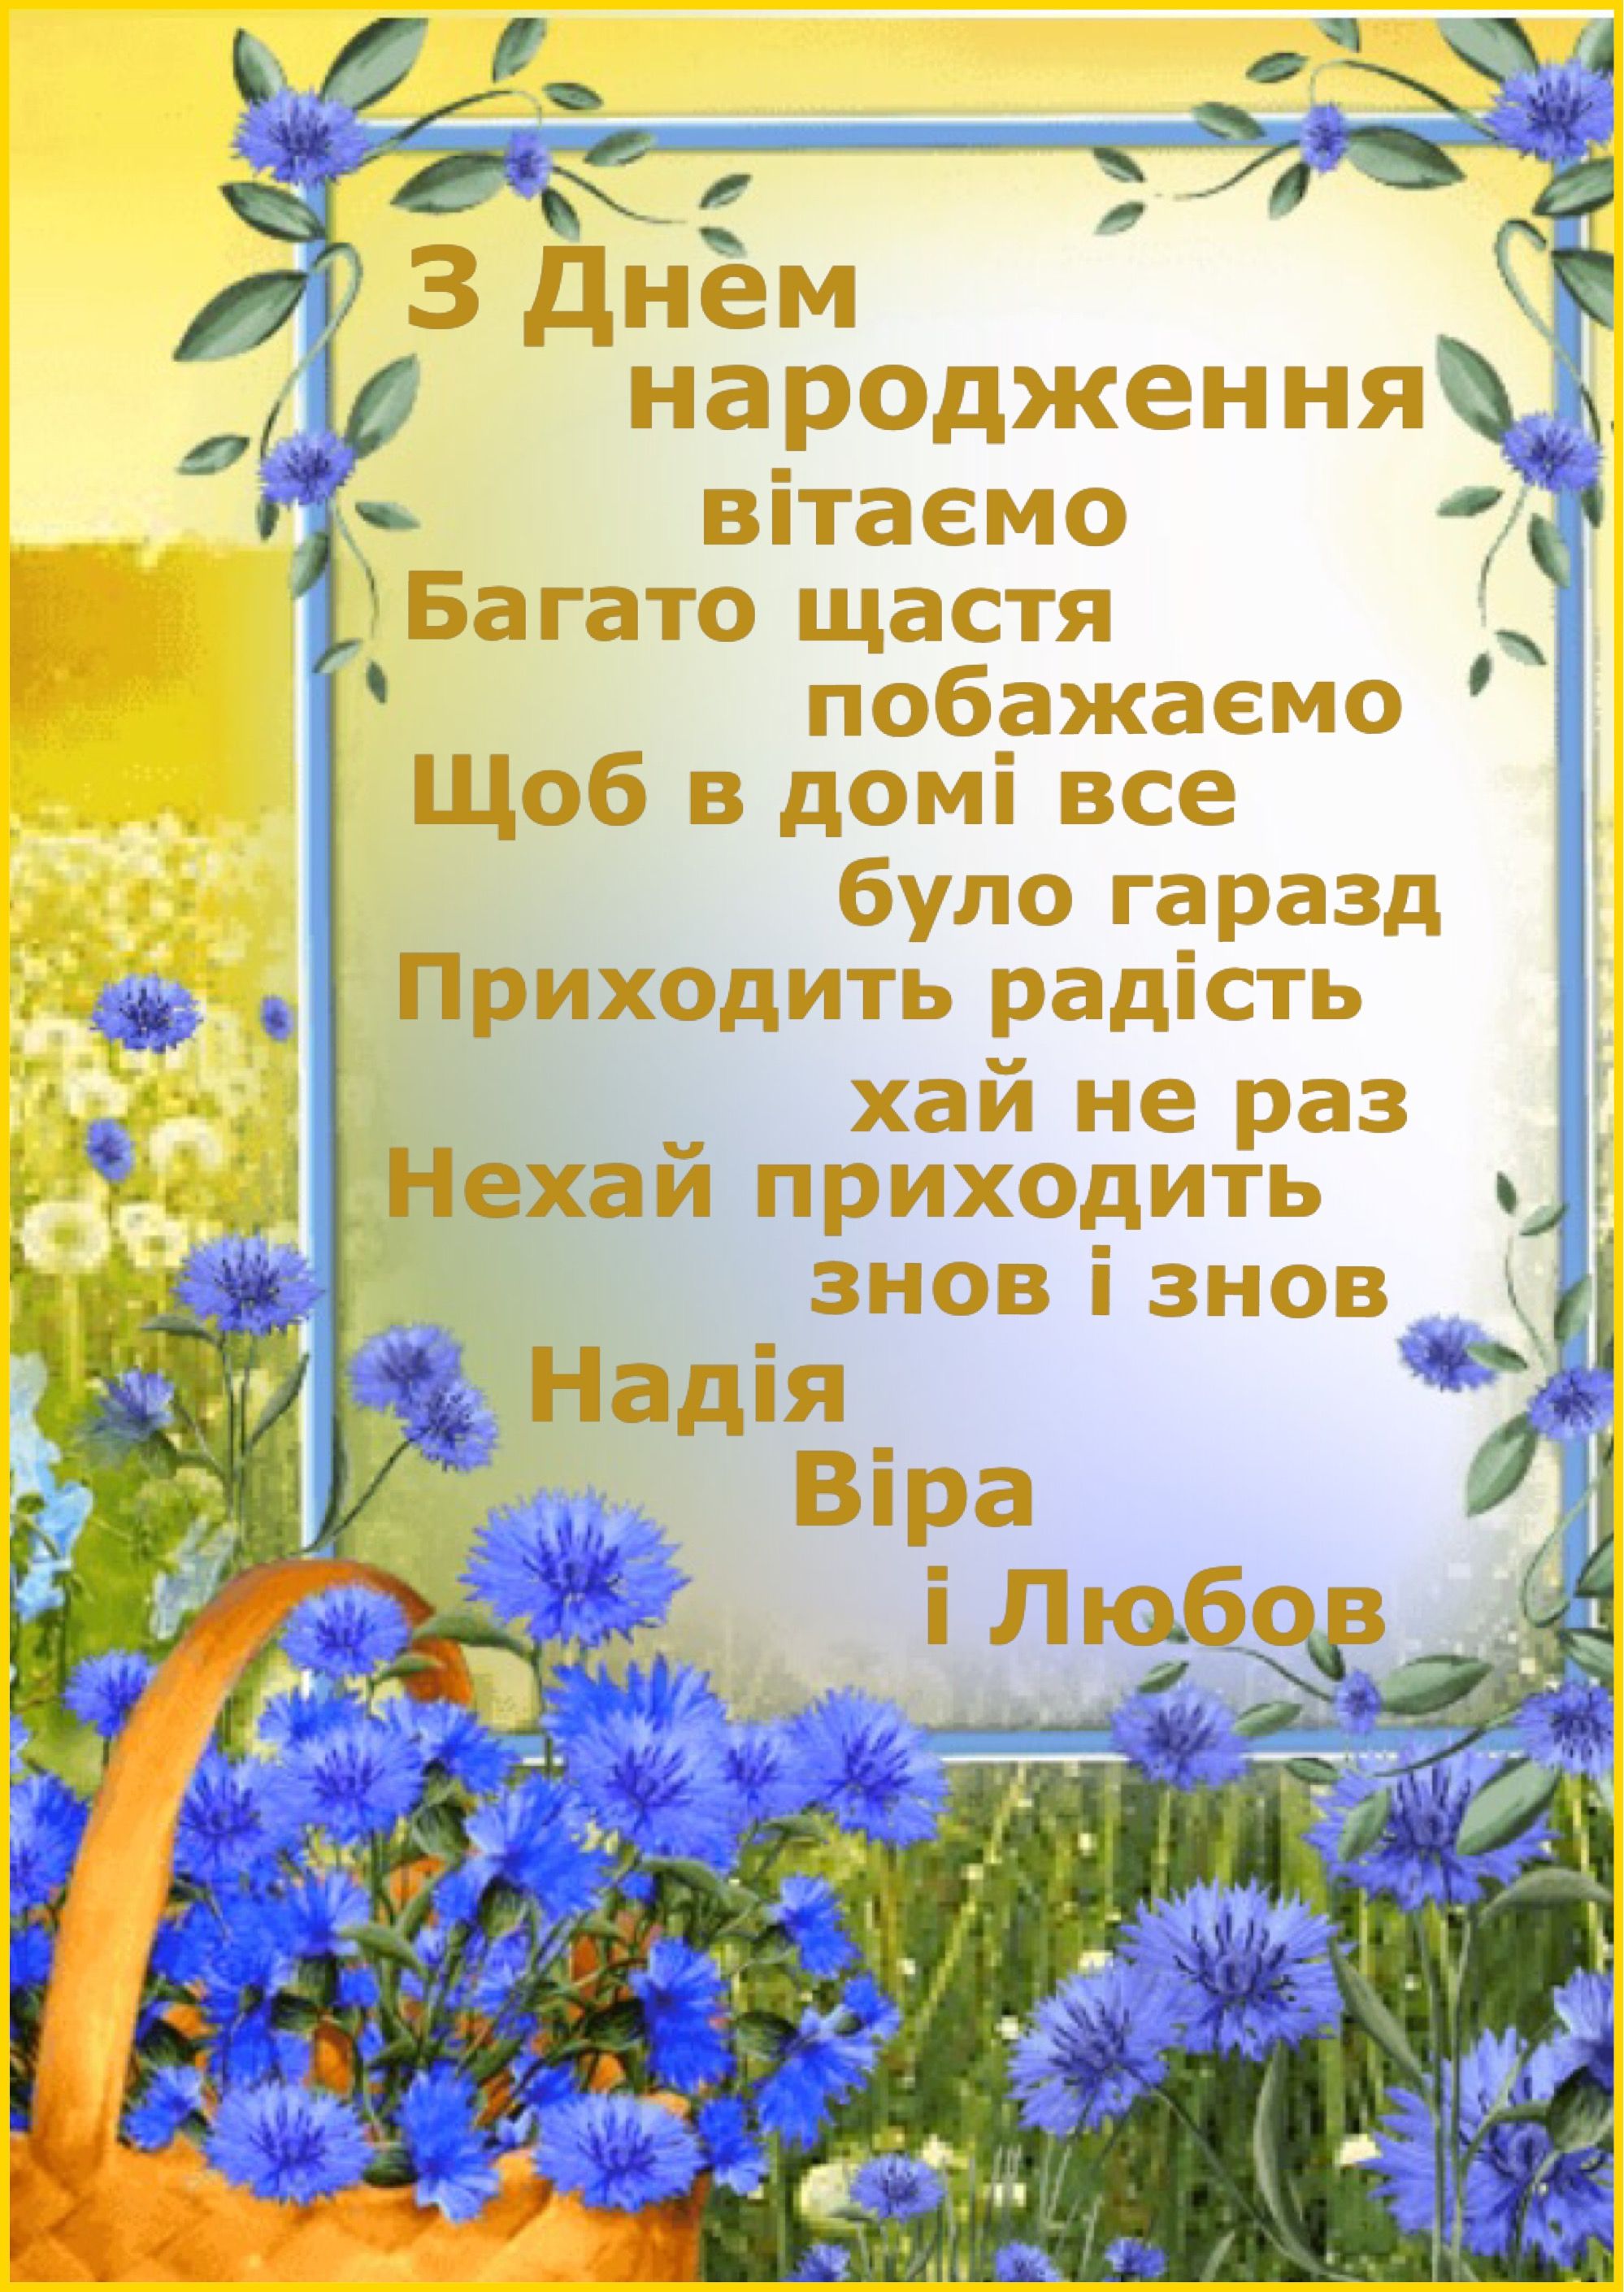 Привітати сусідку з днем народження українською мовою
